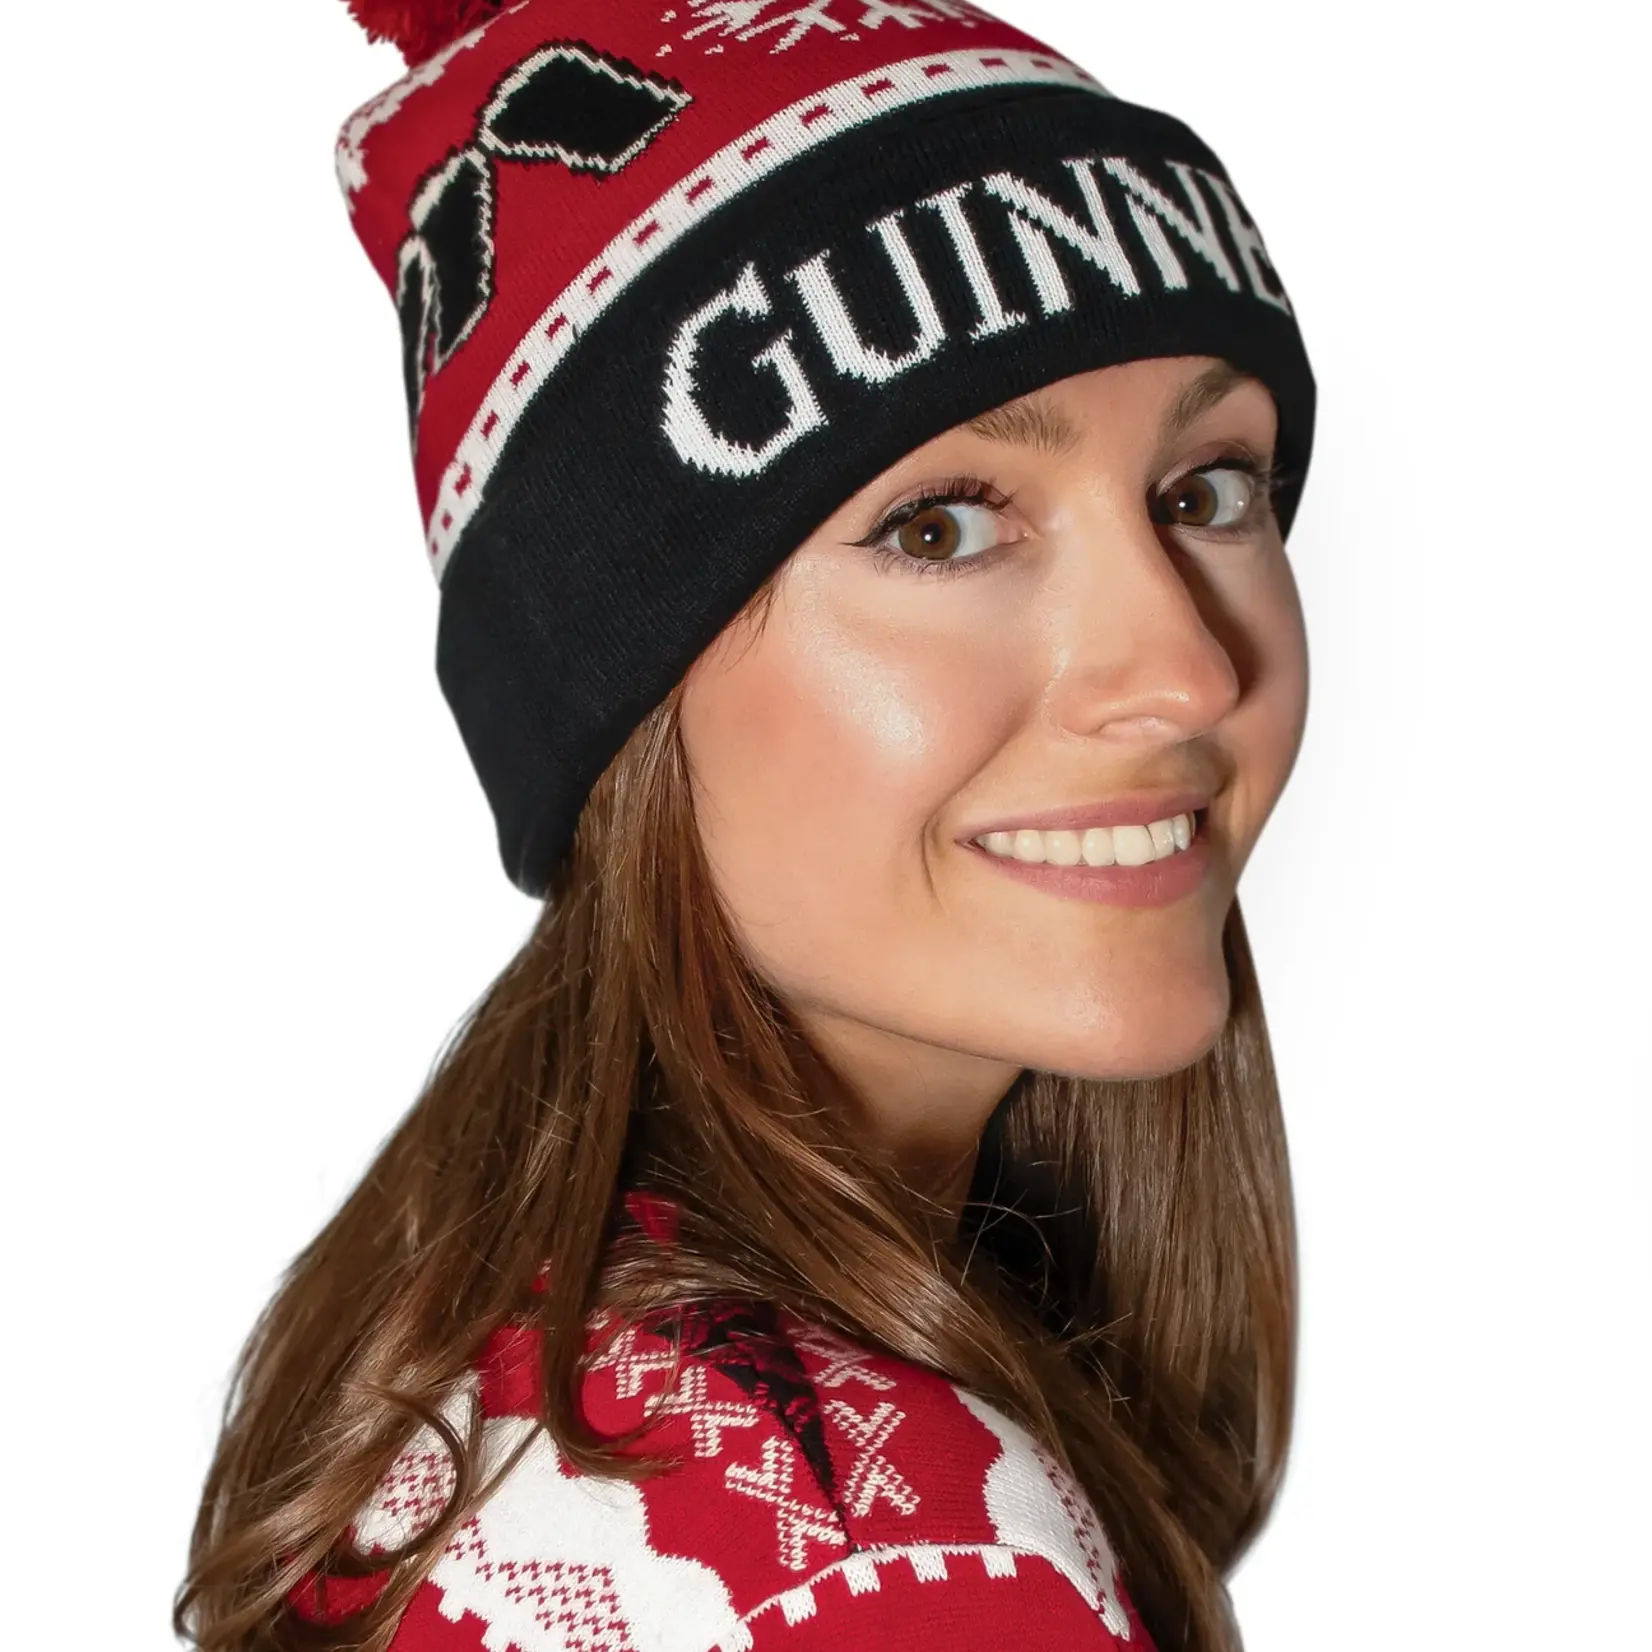 Guinness Guinness Black & Red Winter Beanie